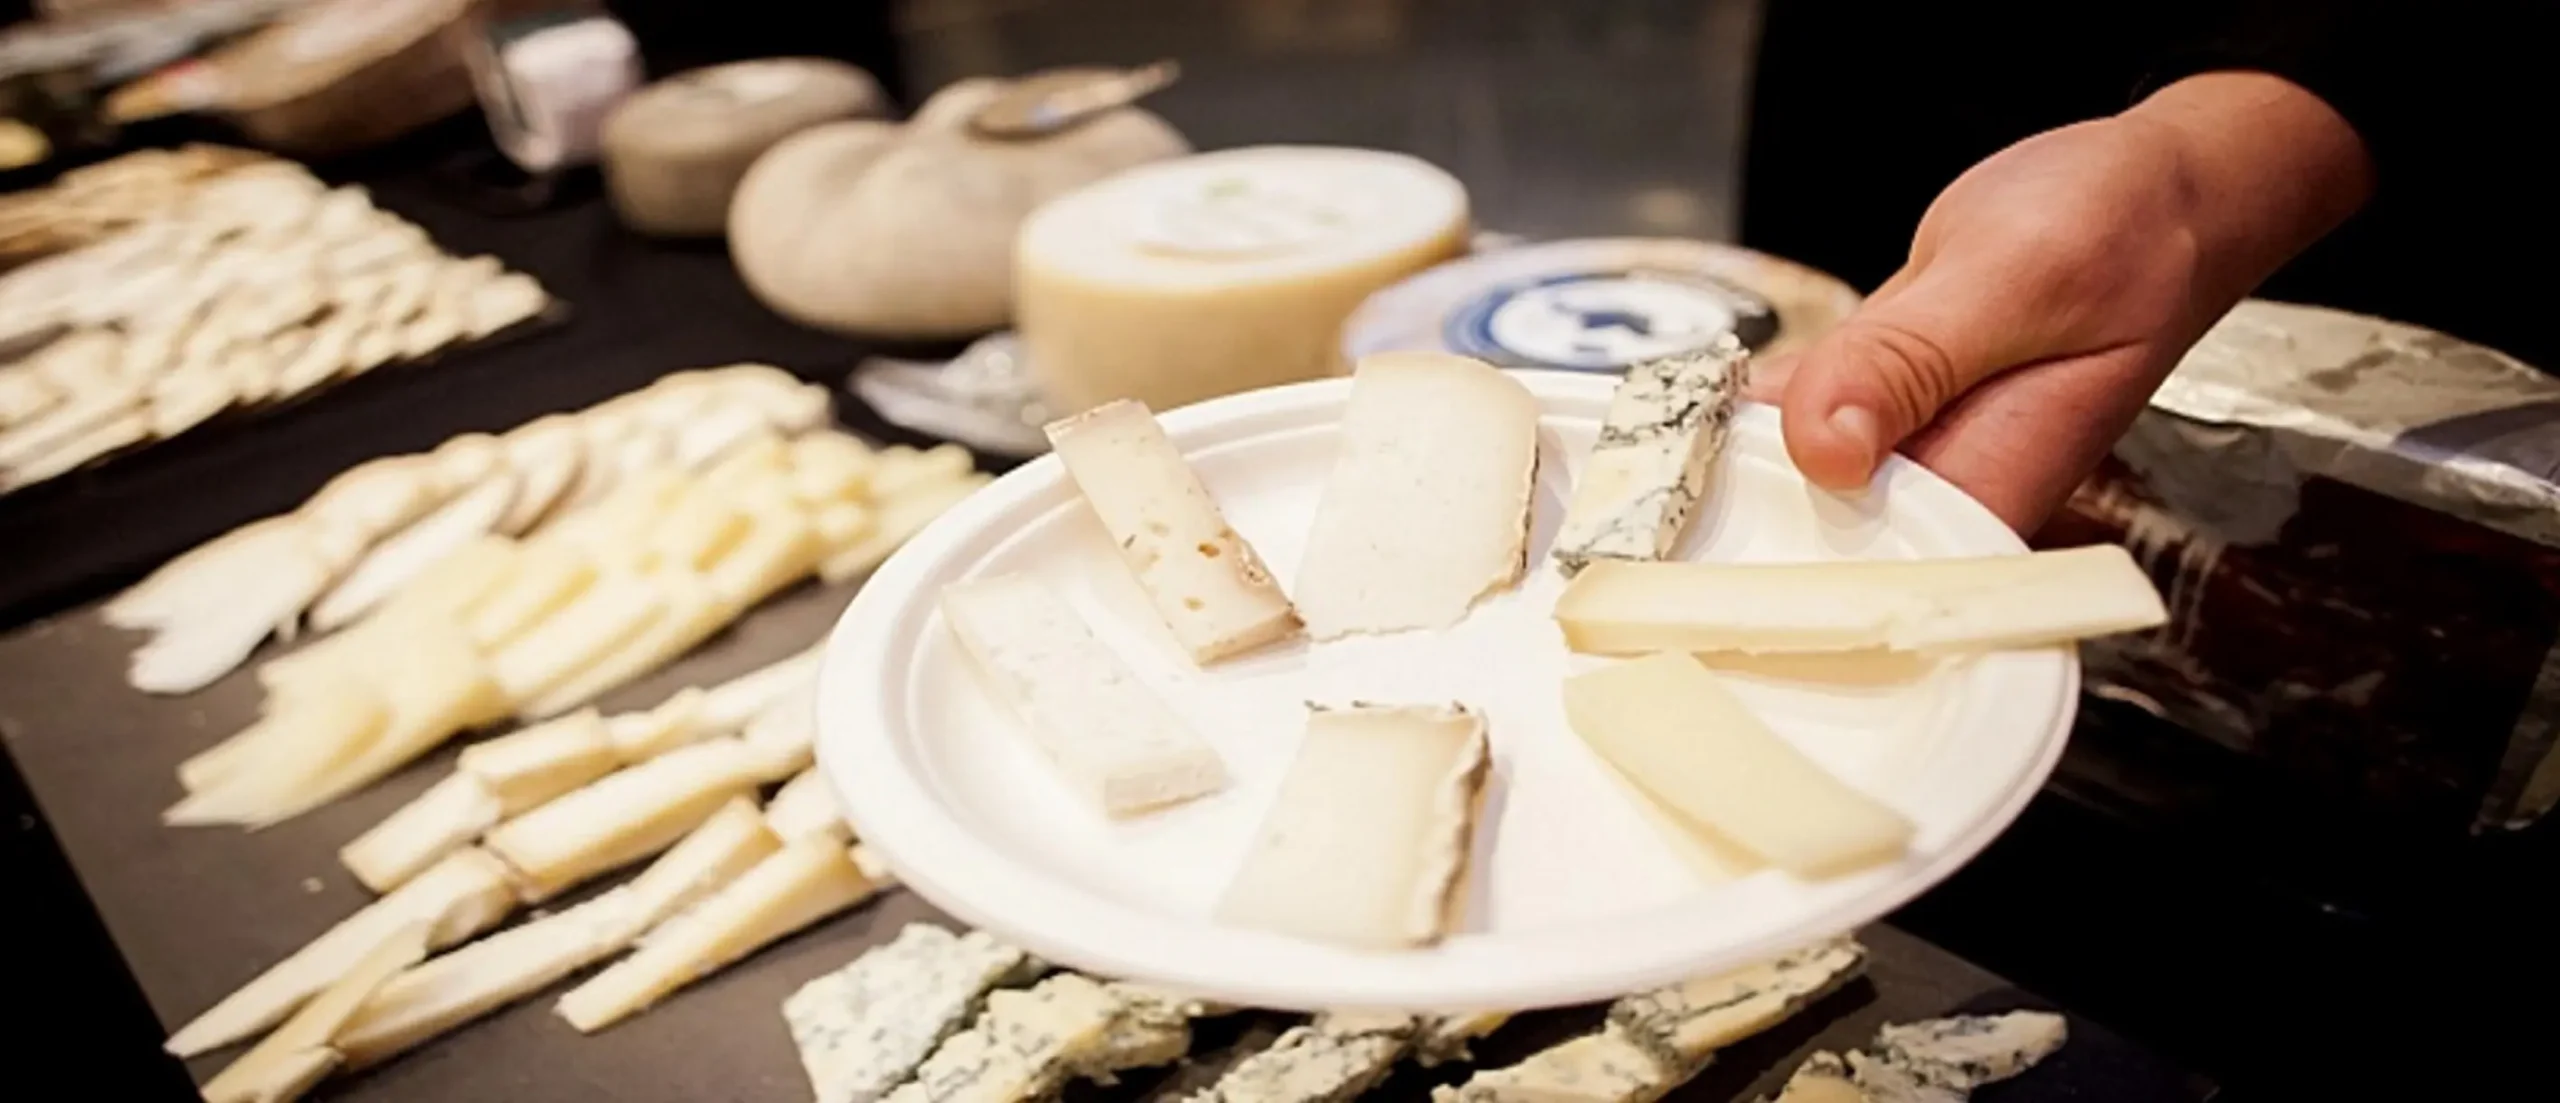 feria del queso en cataluña - Cuándo es la Feria de La Seu d'Urgell